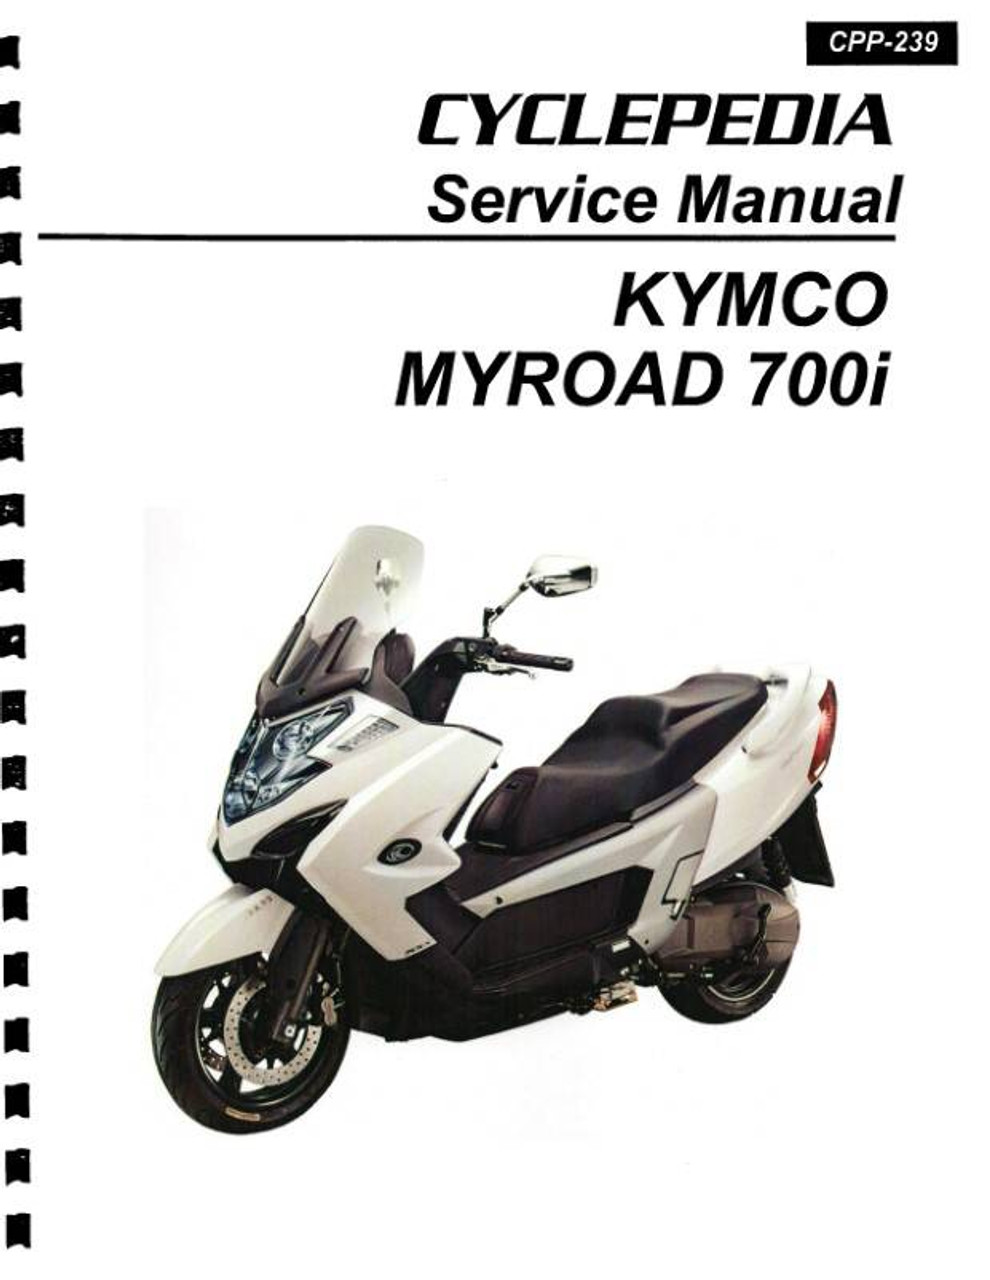 kig ind farve Give KYMCO MYROAD 700i Scooter Service Manual